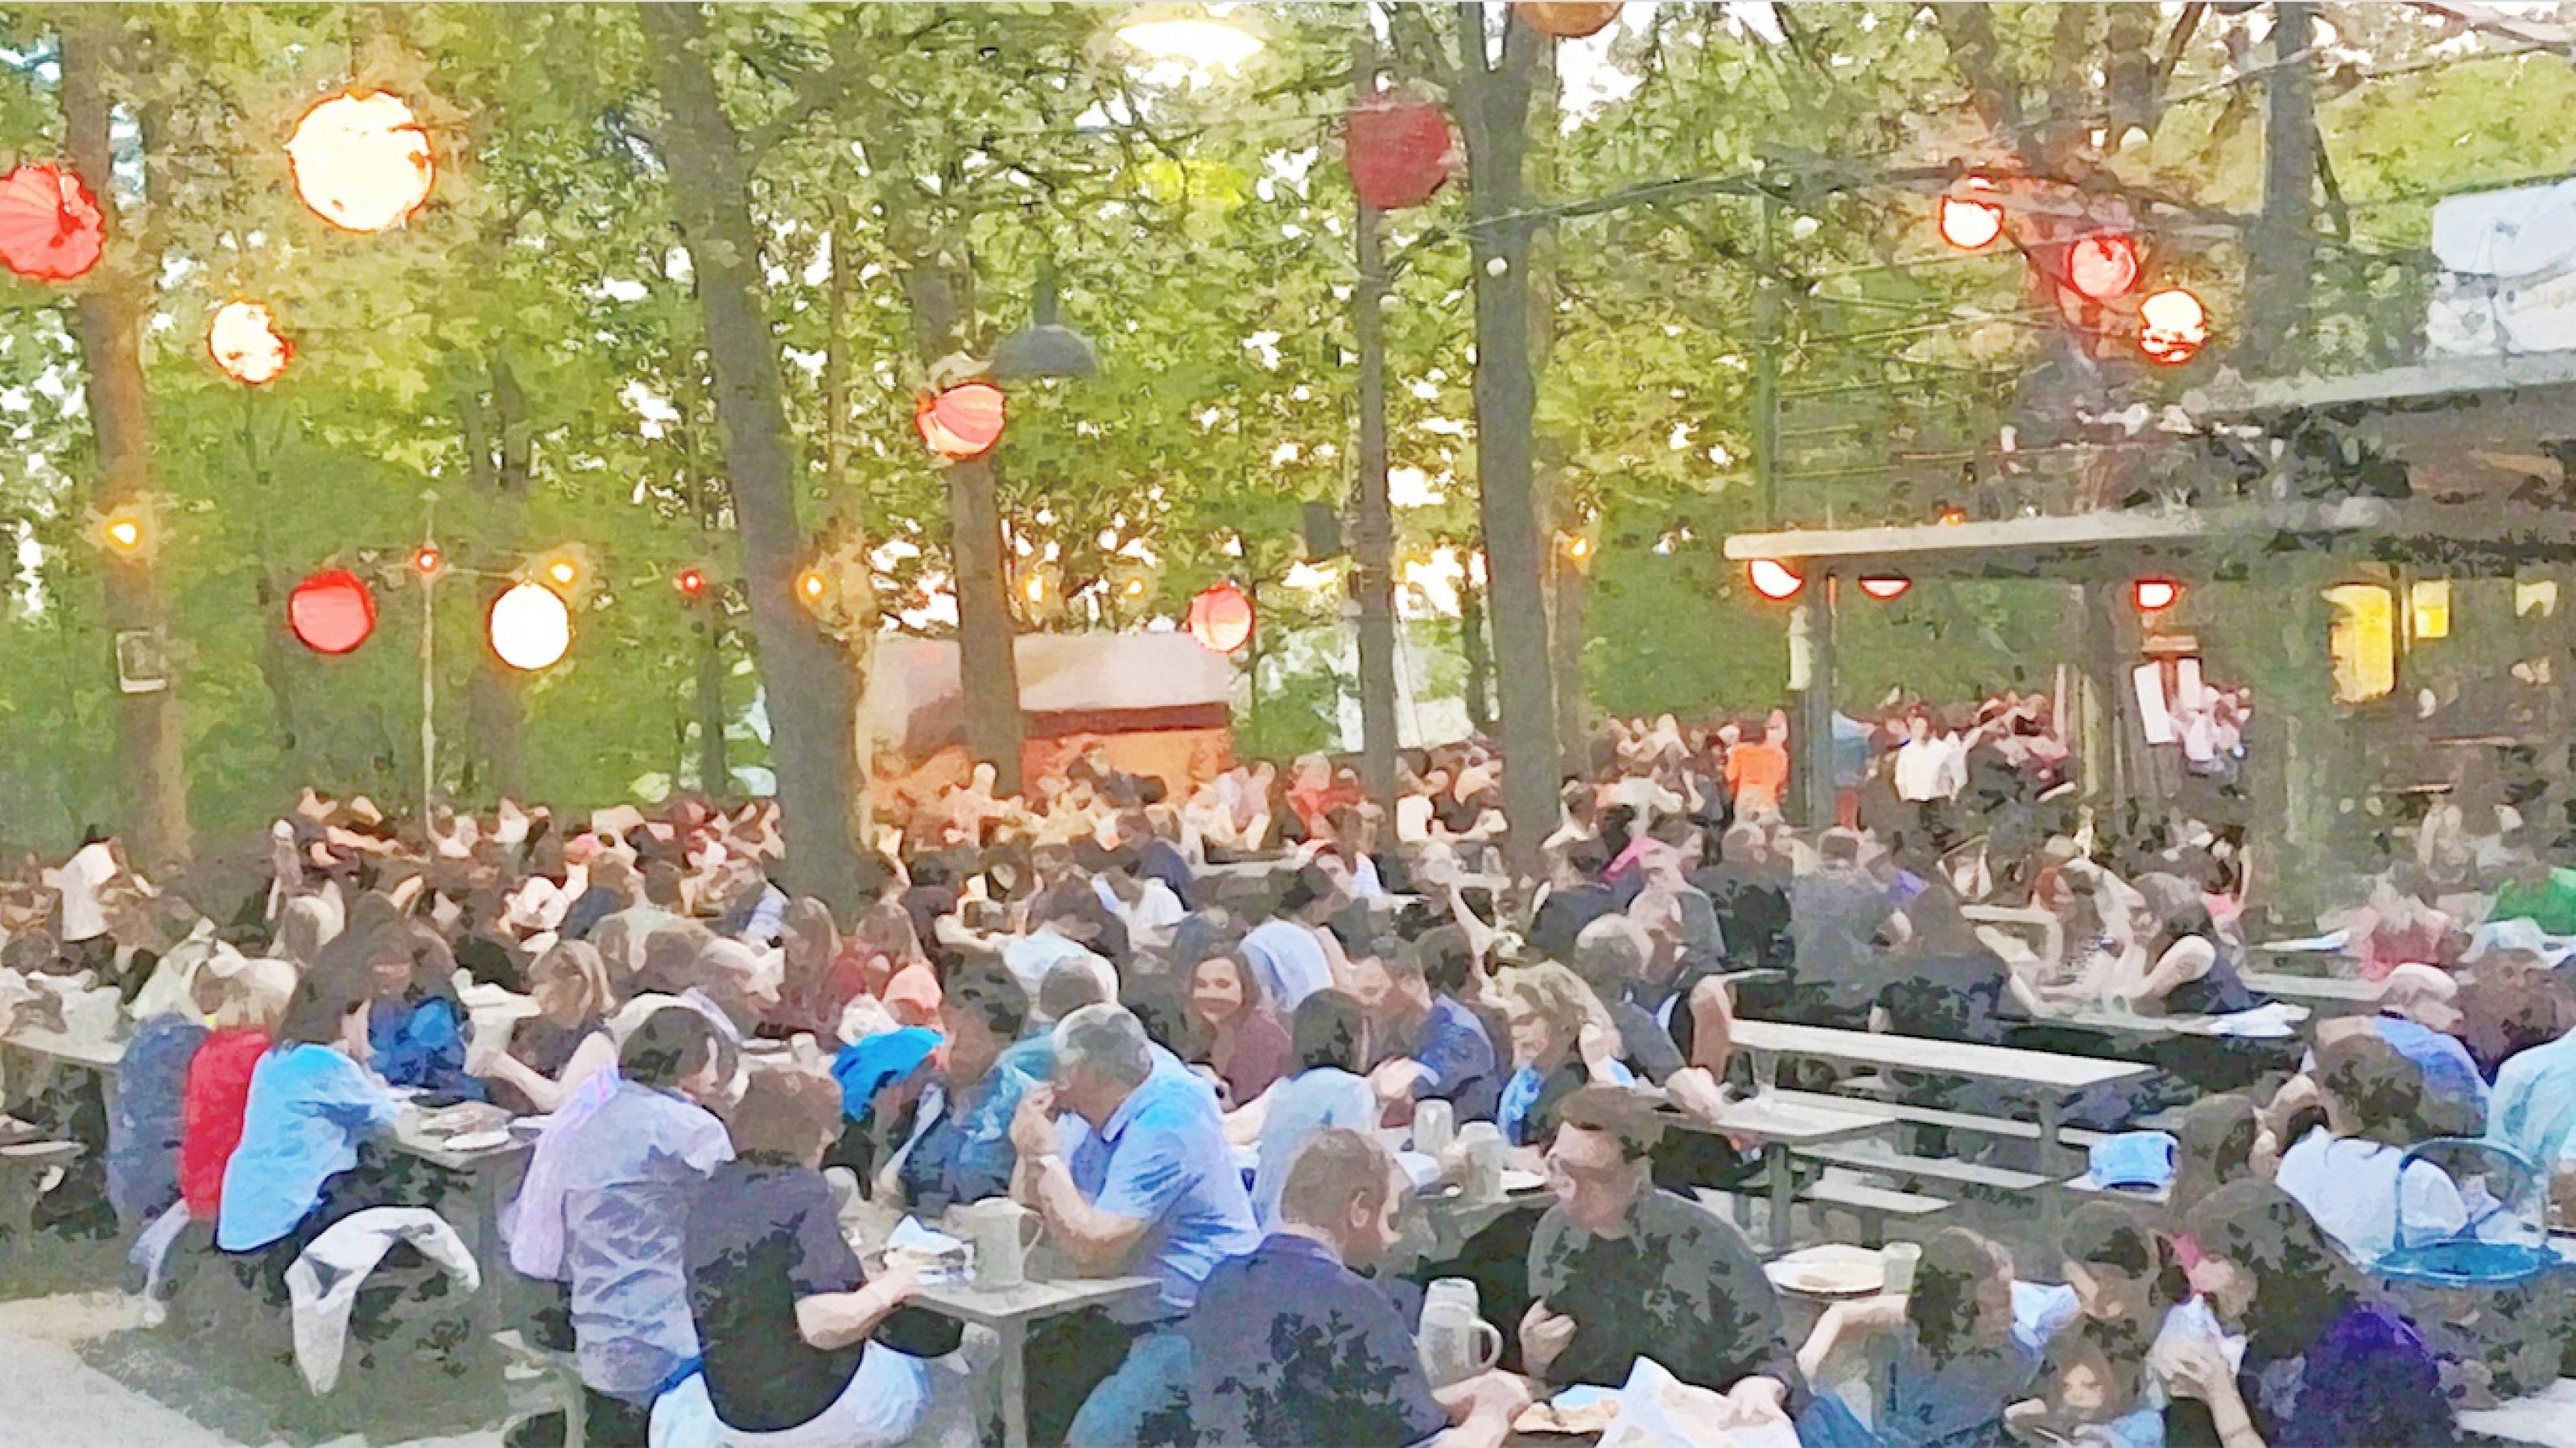 Eine Szene im Biergarten, an den Bäumen hängen Lampions, die Menschen auf dem Foto sind als Aquarell verfremdet. Die Szene zeigt einen lauen Sommerabend, wer redet da schon über die Klimakrise?